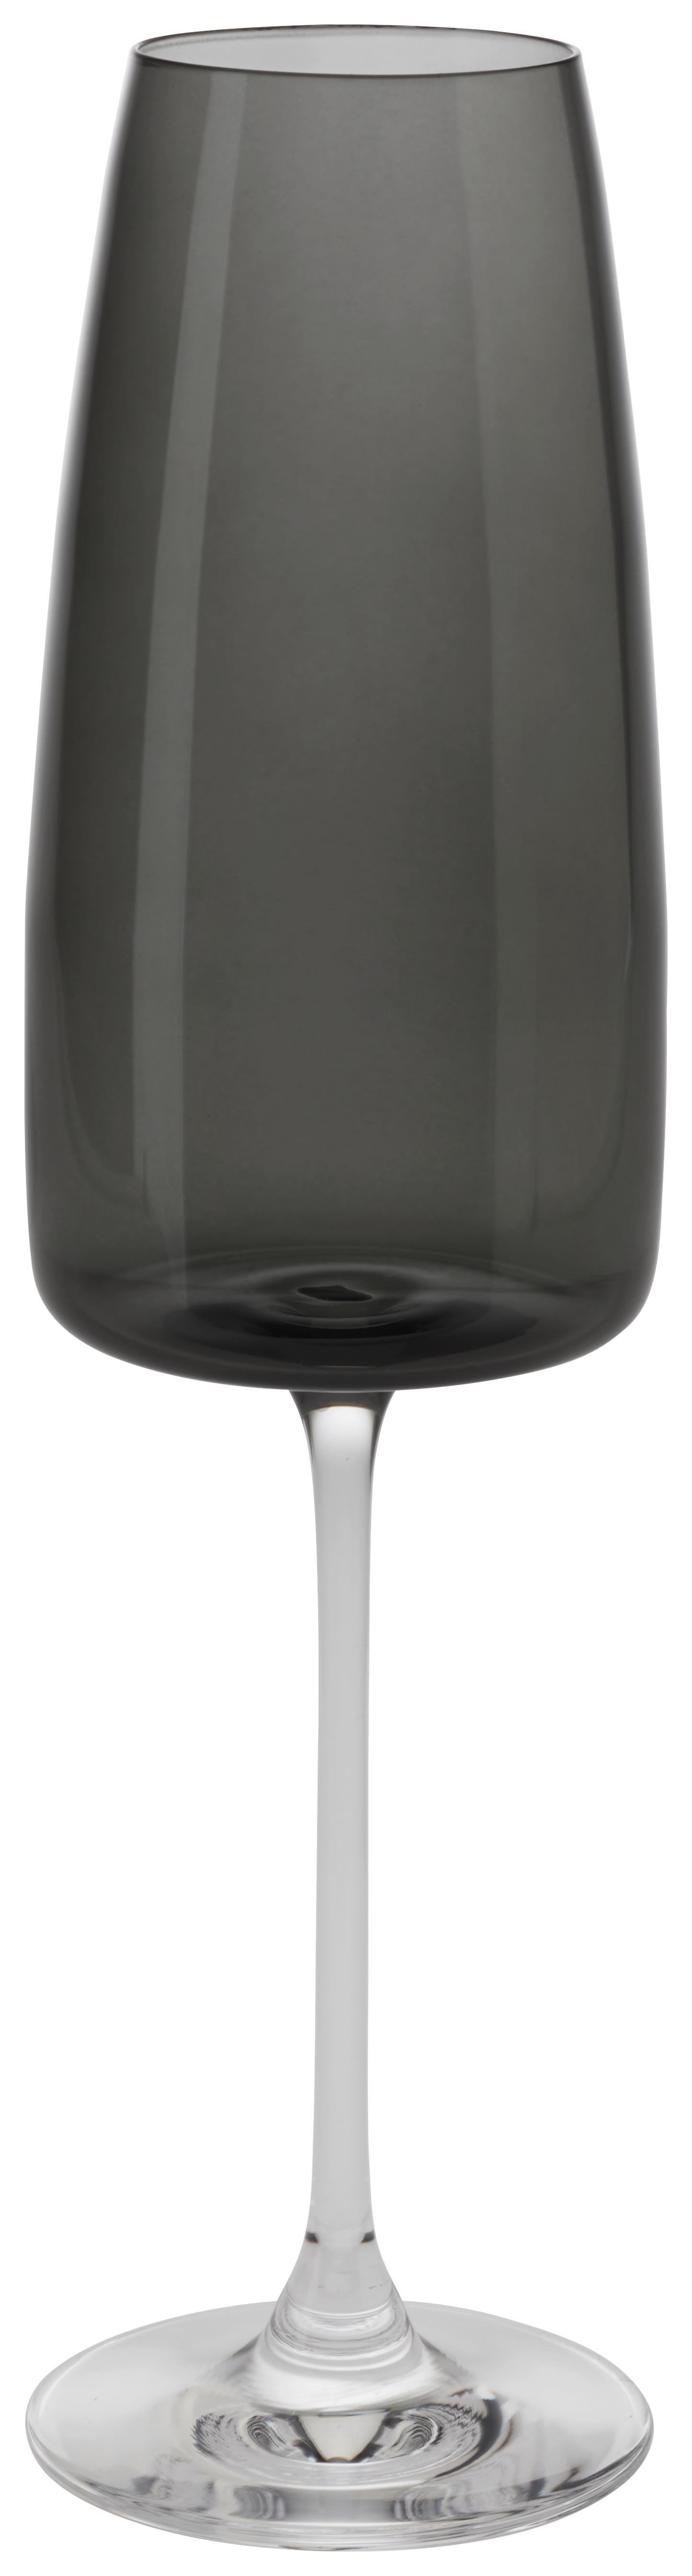 Pohár Na Sekt Nicki, 340ml - čierna, Moderný, sklo (6,6/25cm) - Premium Living